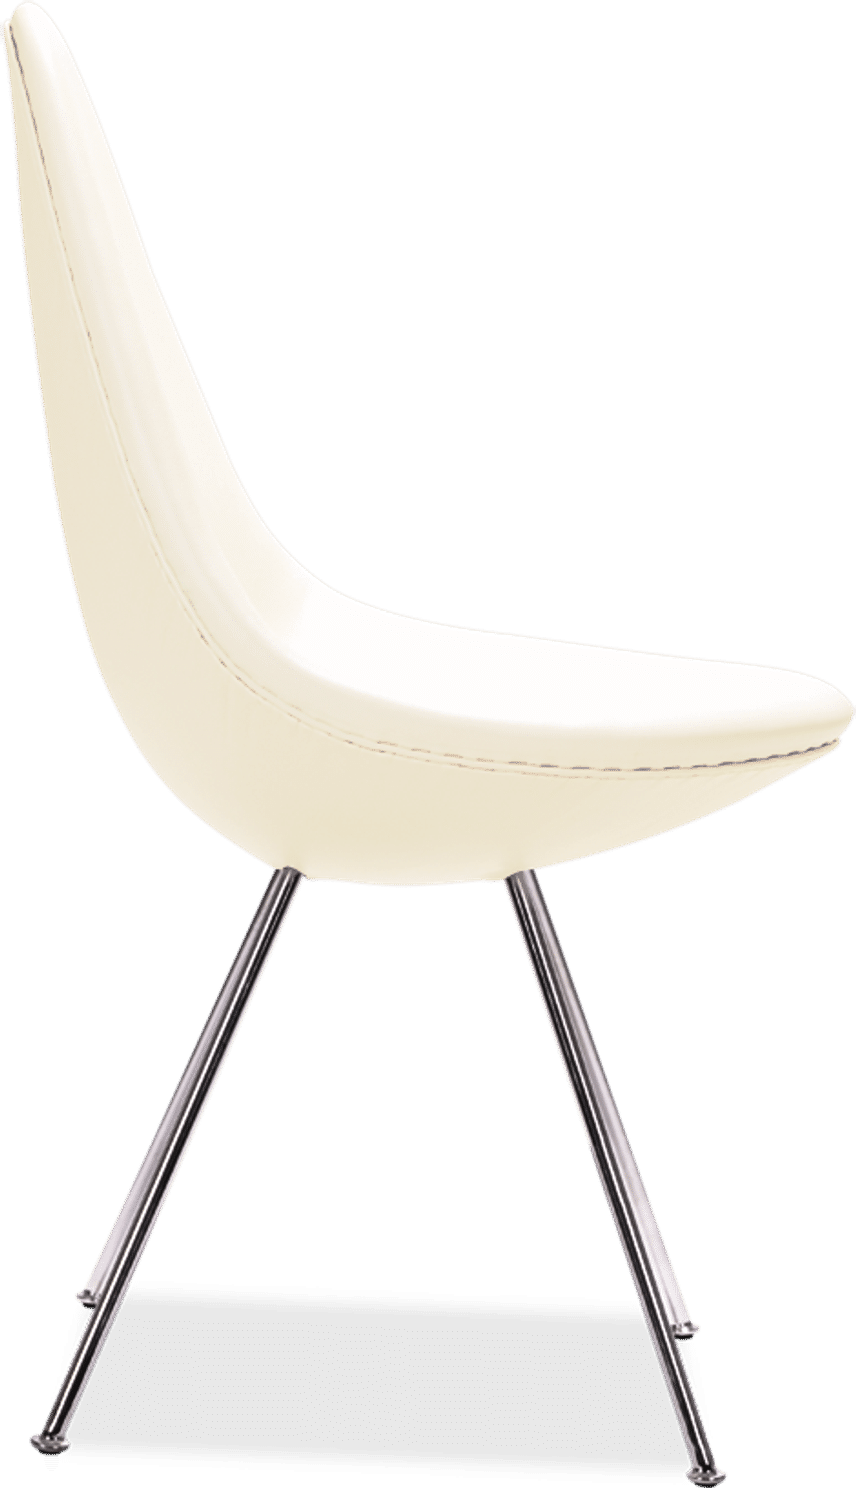 Drop Chair Premium Leather/Cream image.